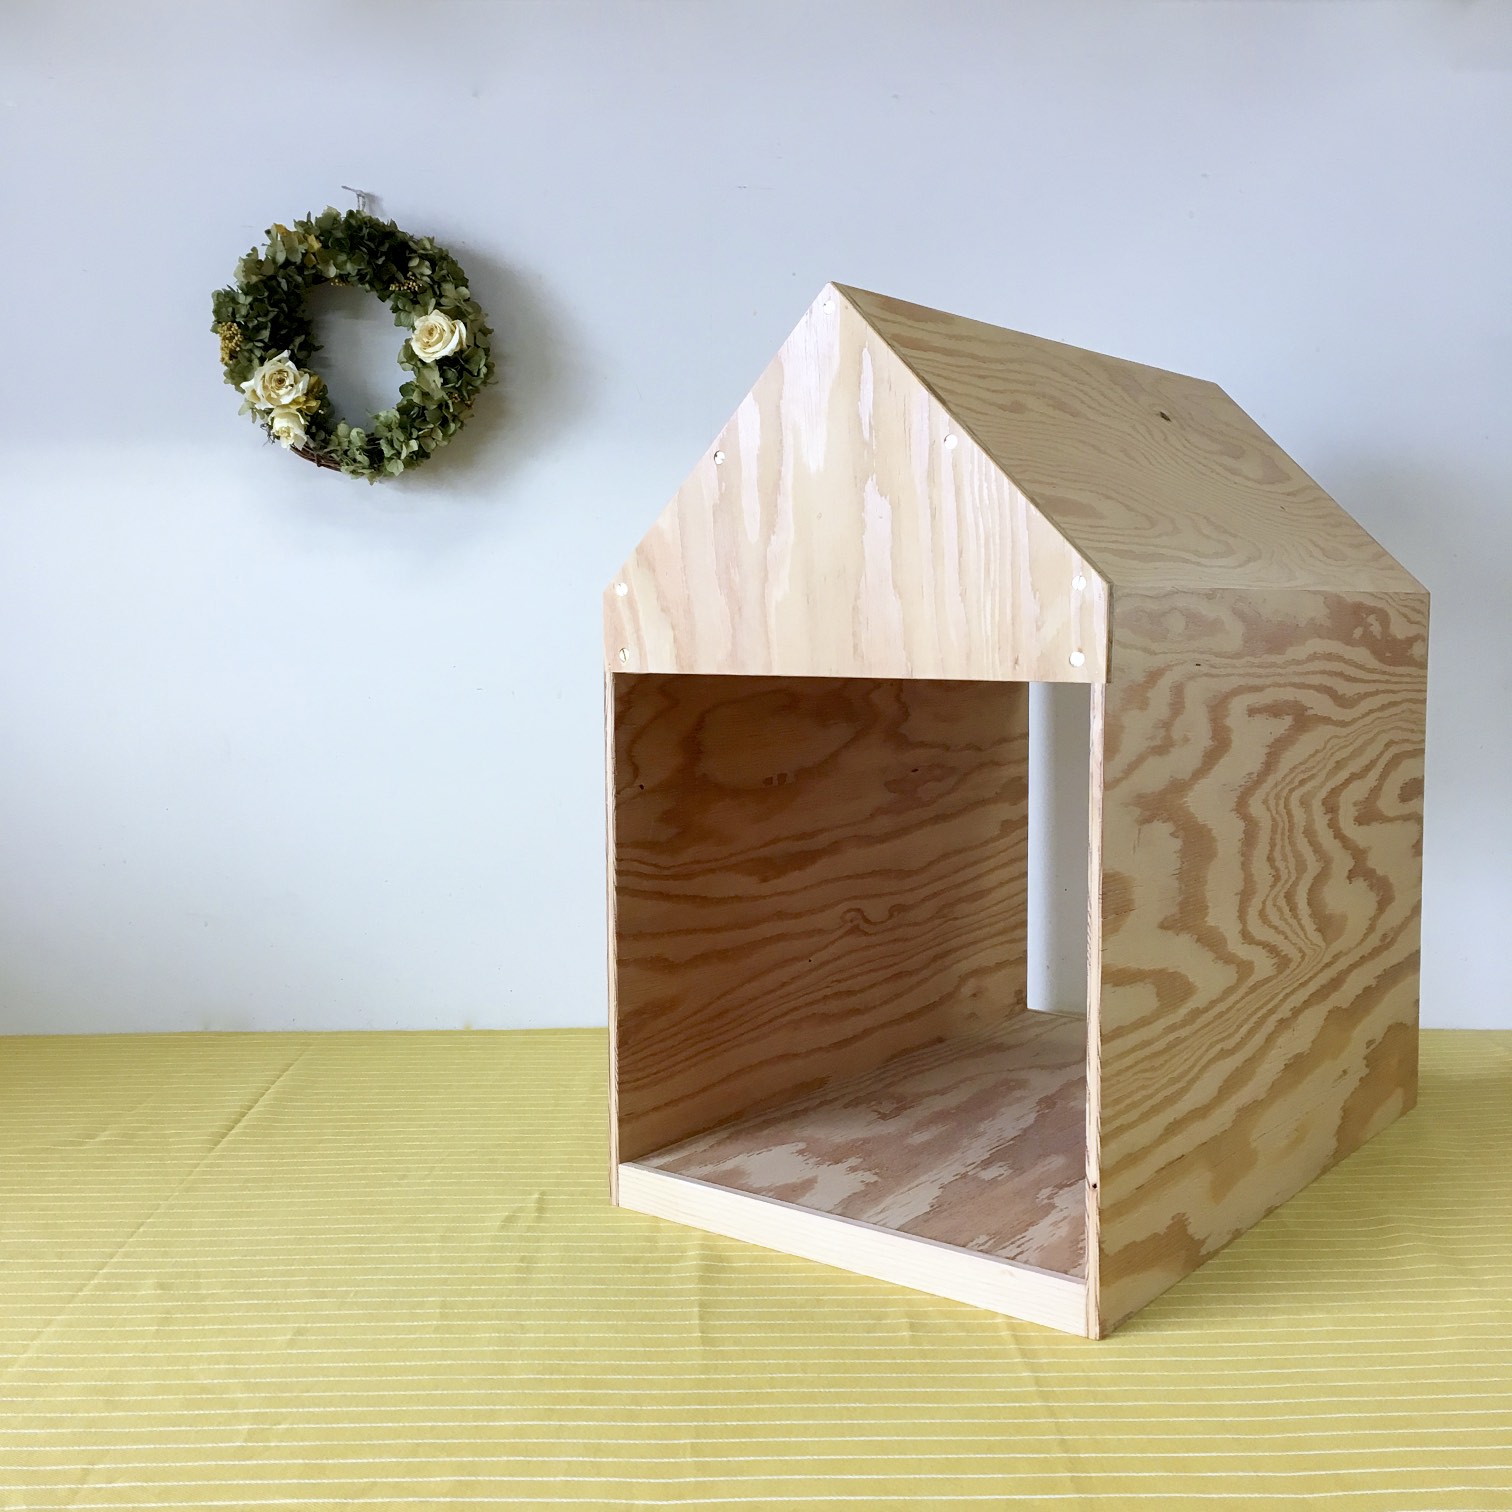 ペットハウス 木製 工具不要 かわいい ドッグハウス マットセット 猫小屋 犬小屋 おしゃれ 簡単組み立て ウッドハウス 扉付き 室内